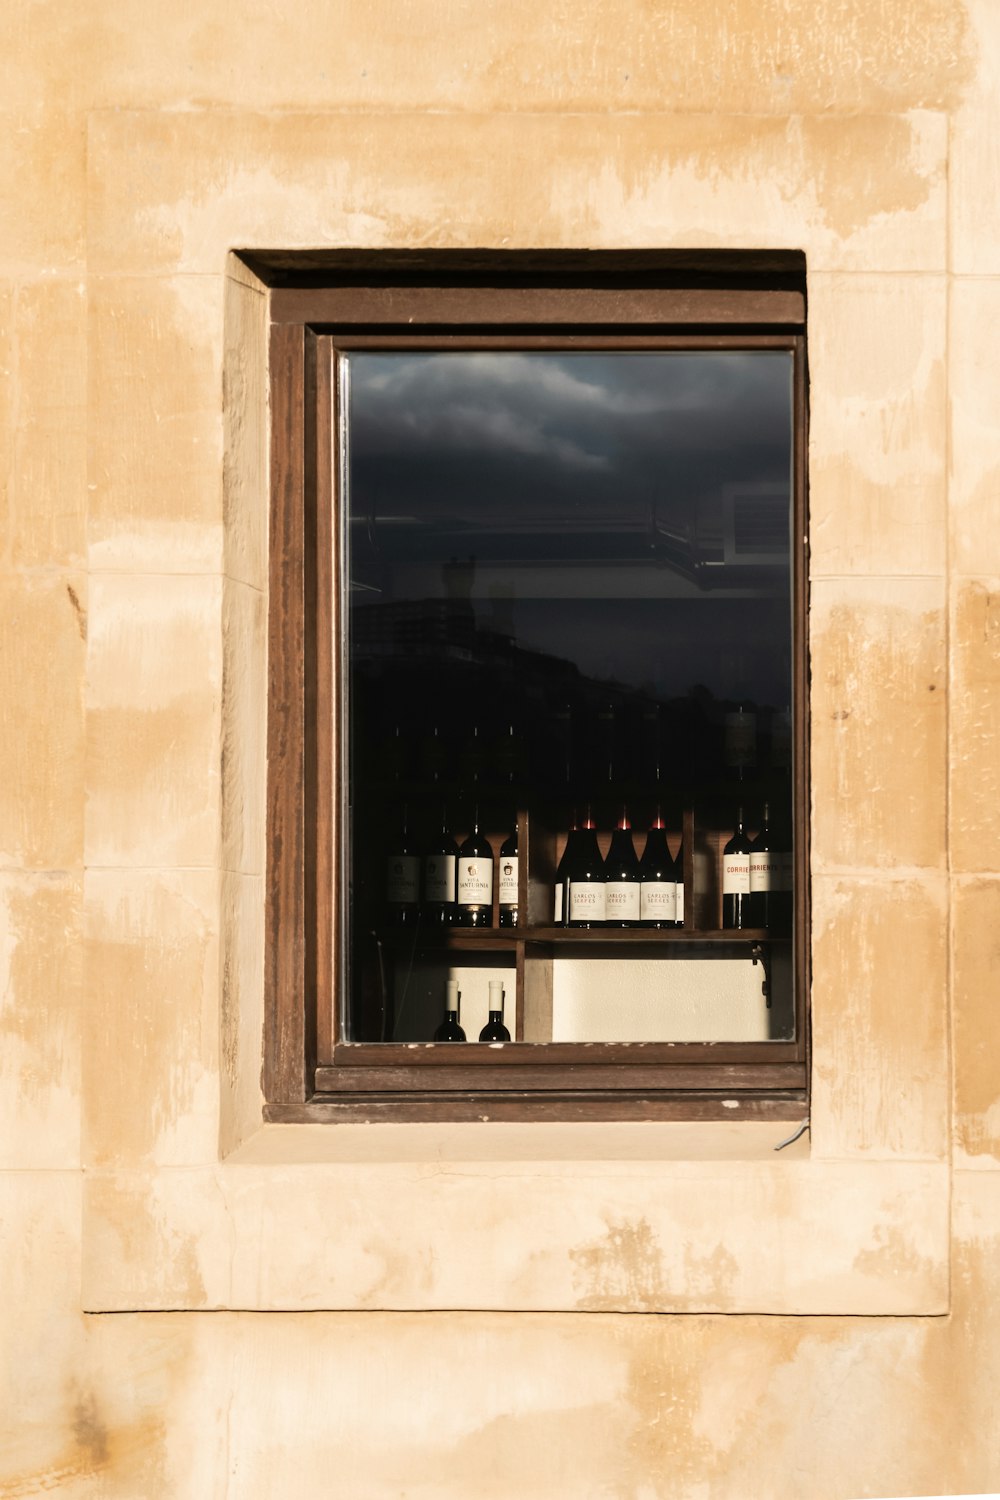 a window that has bottles of wine in it